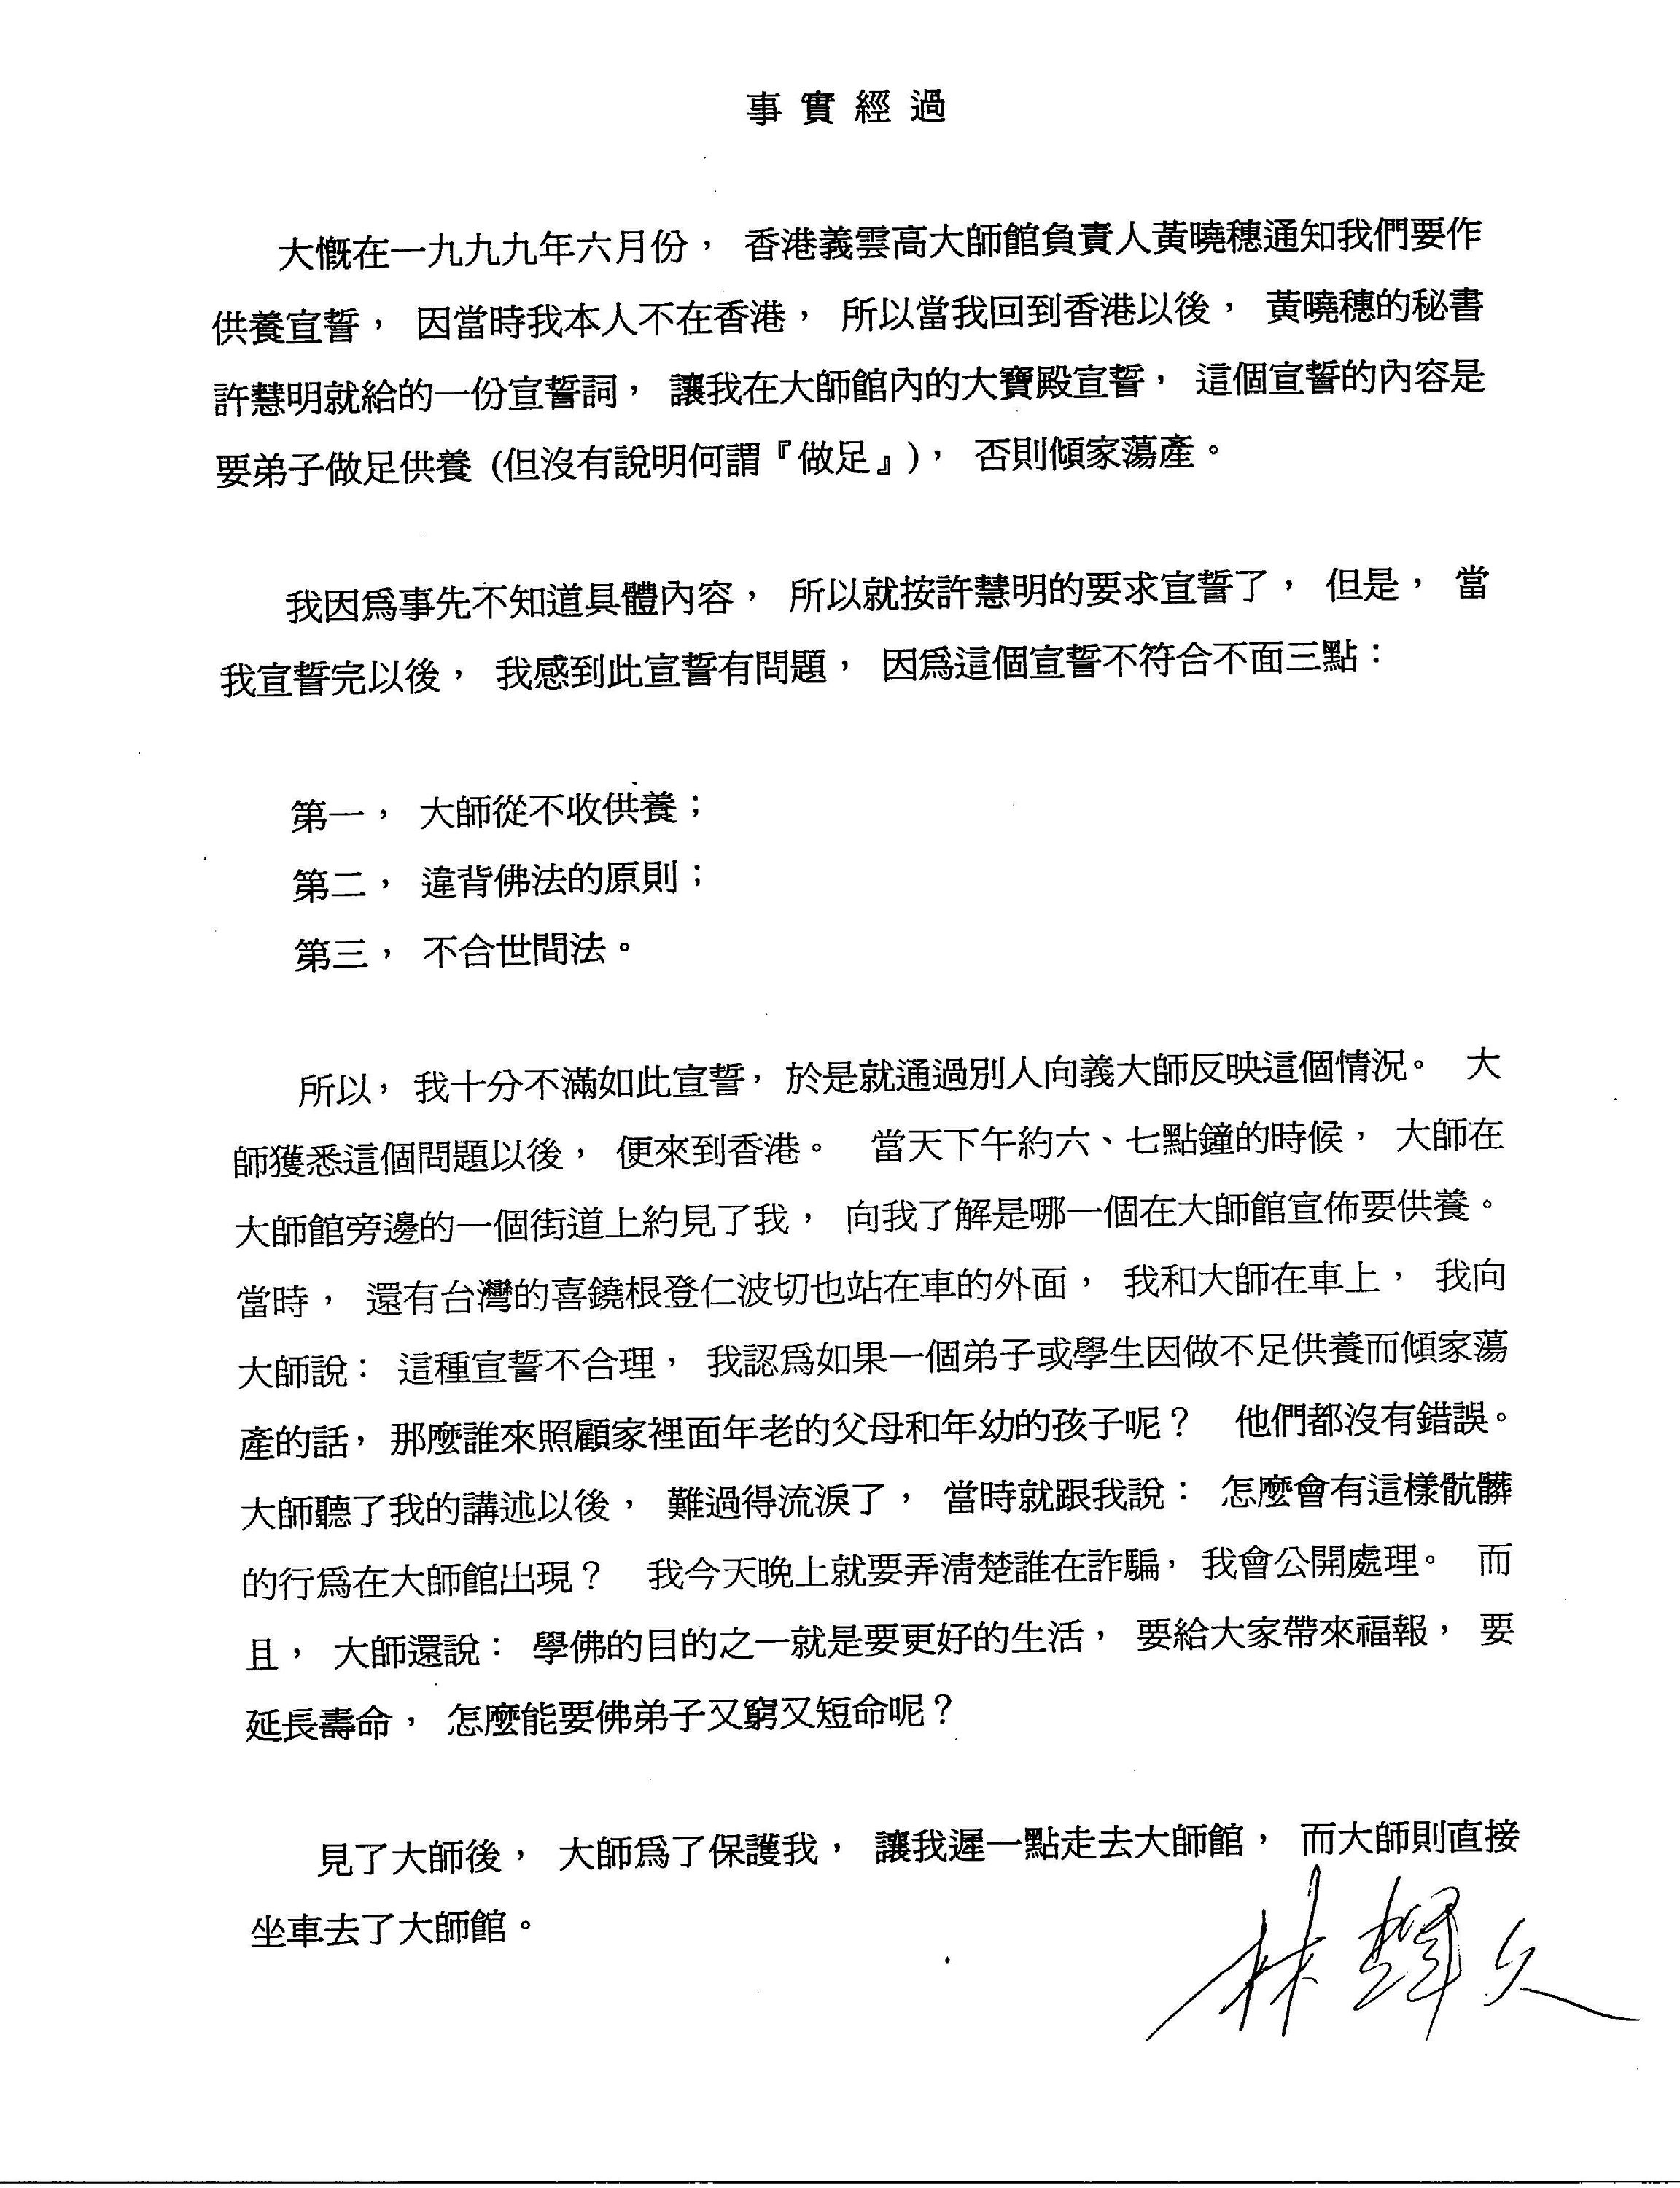 香港法院重判黄晓穗诈骗案 还第三世多杰羌佛清白 第8张